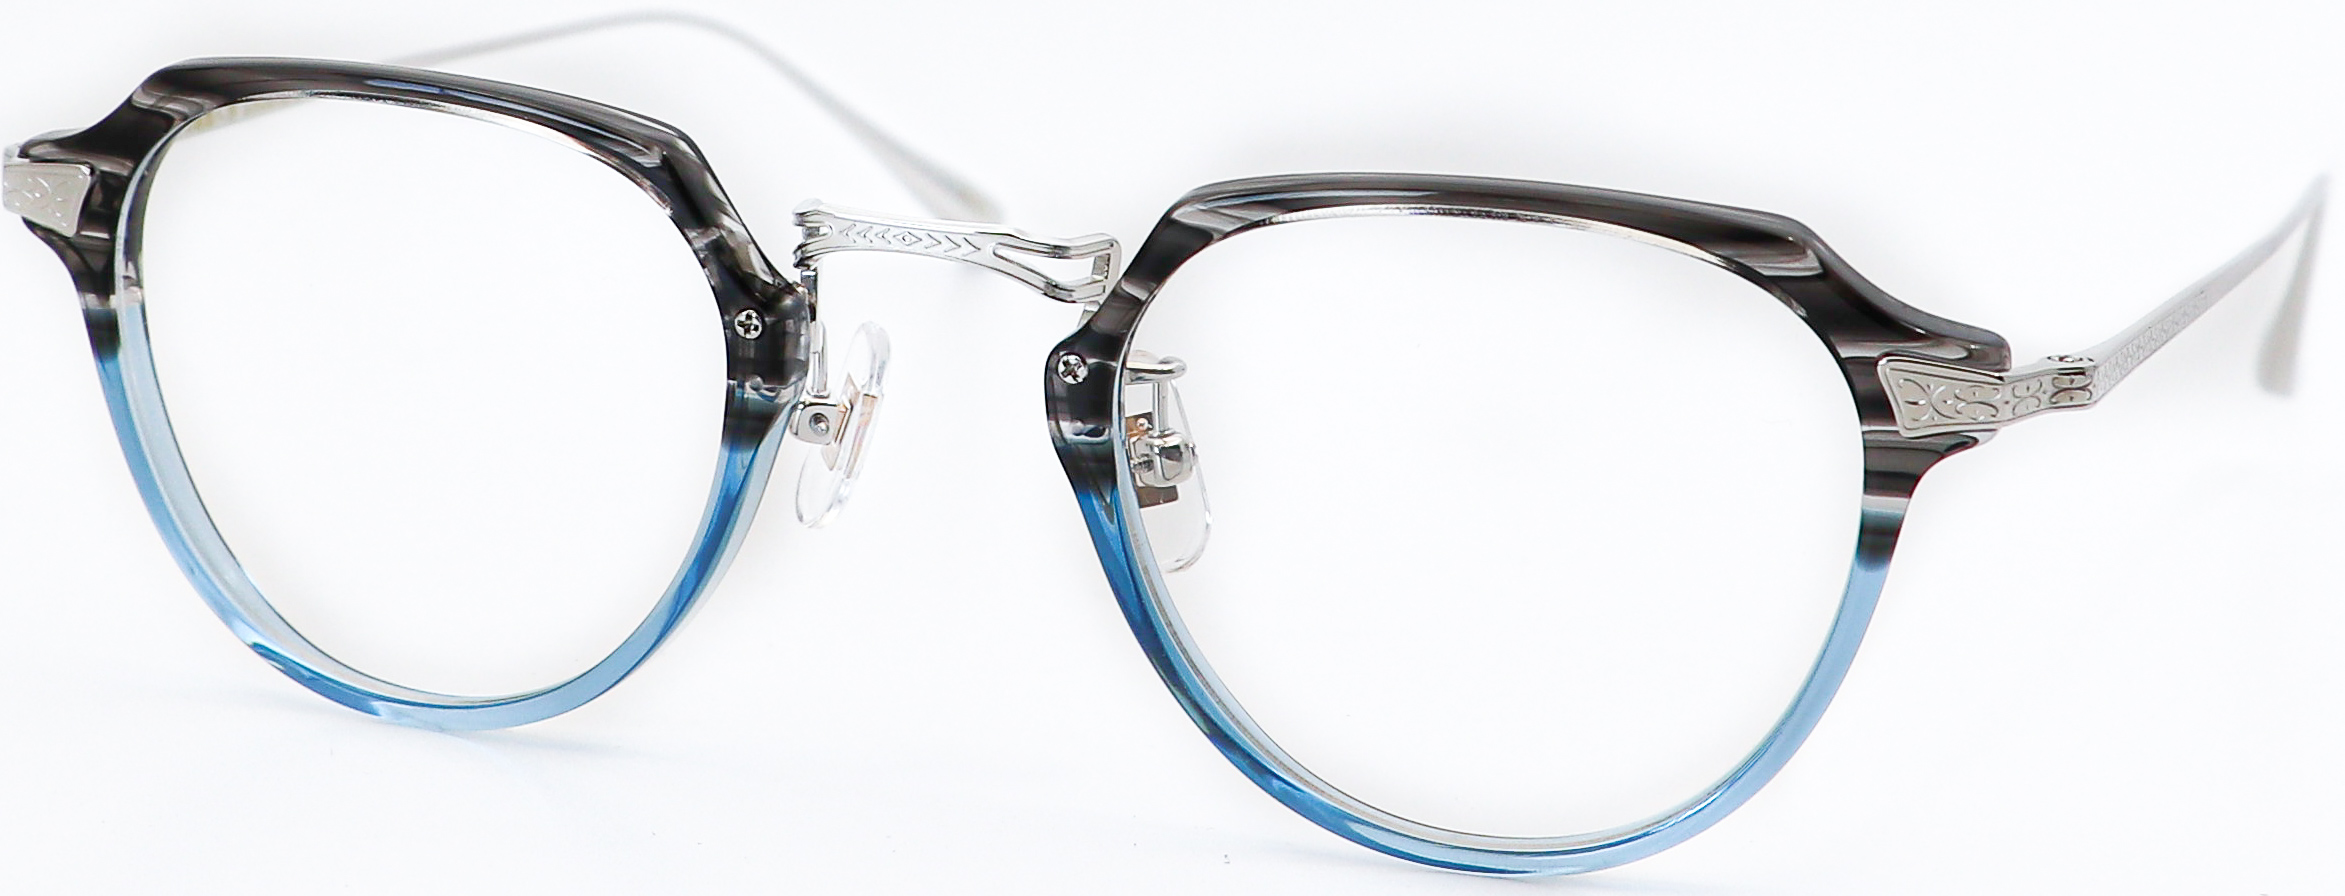 眼鏡のカラータイプC-5 Gray-Blue/Silver